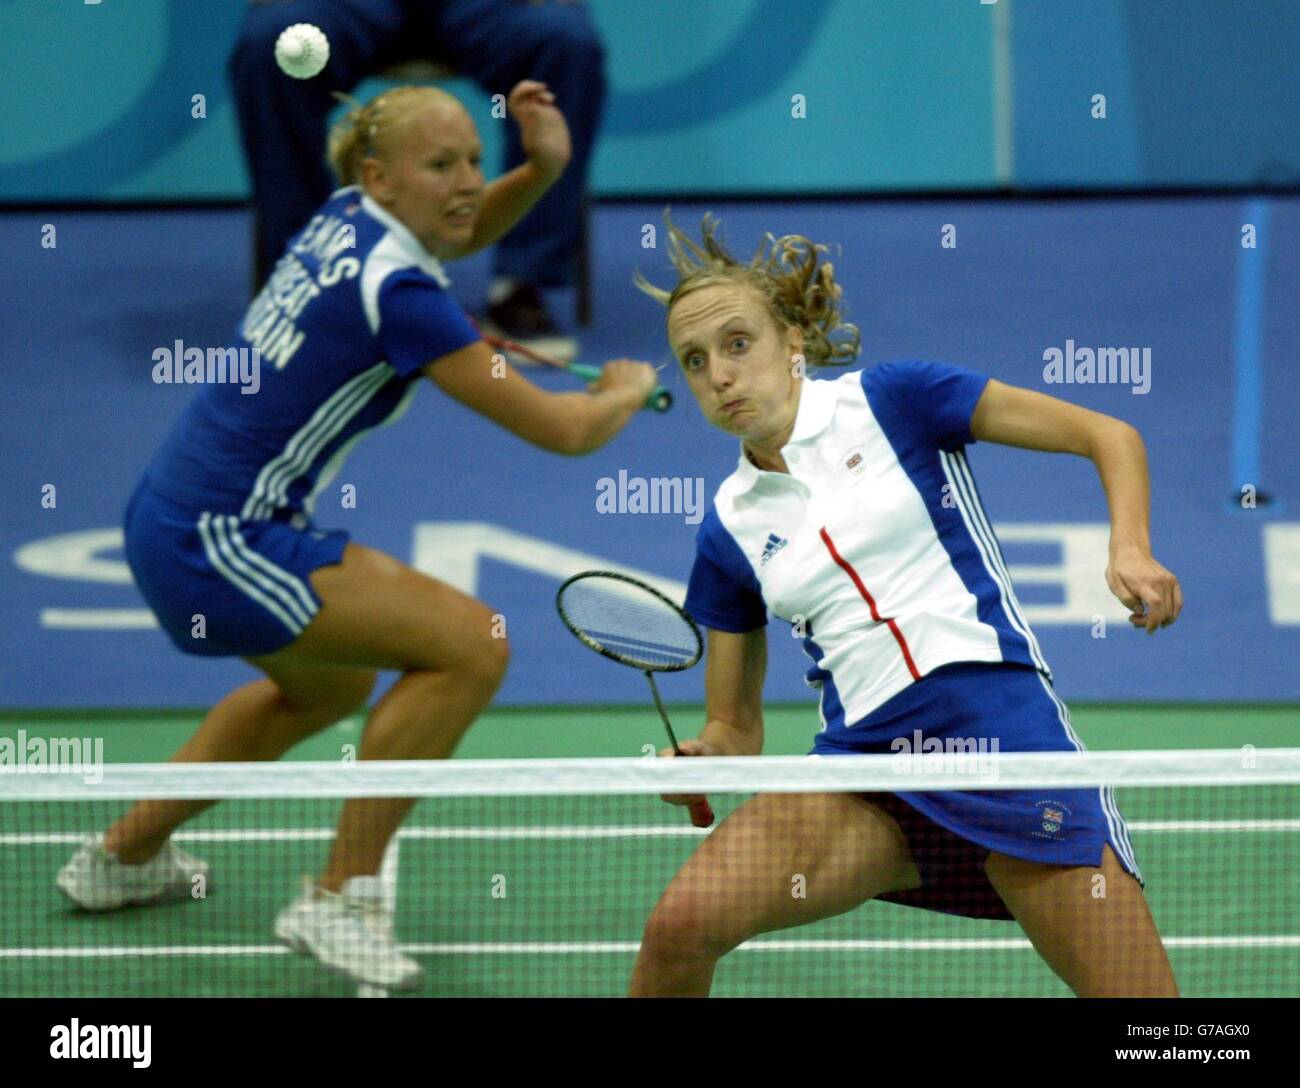 La britannica Donna Kellogg (destra) e Gail EMM in azione contro la Cina Tingting Zhao e Yili Wei nelle qualificazioni Badminton Women's Doubles alla Goudi Olympic Hall di Atene, Grecia. Foto Stock